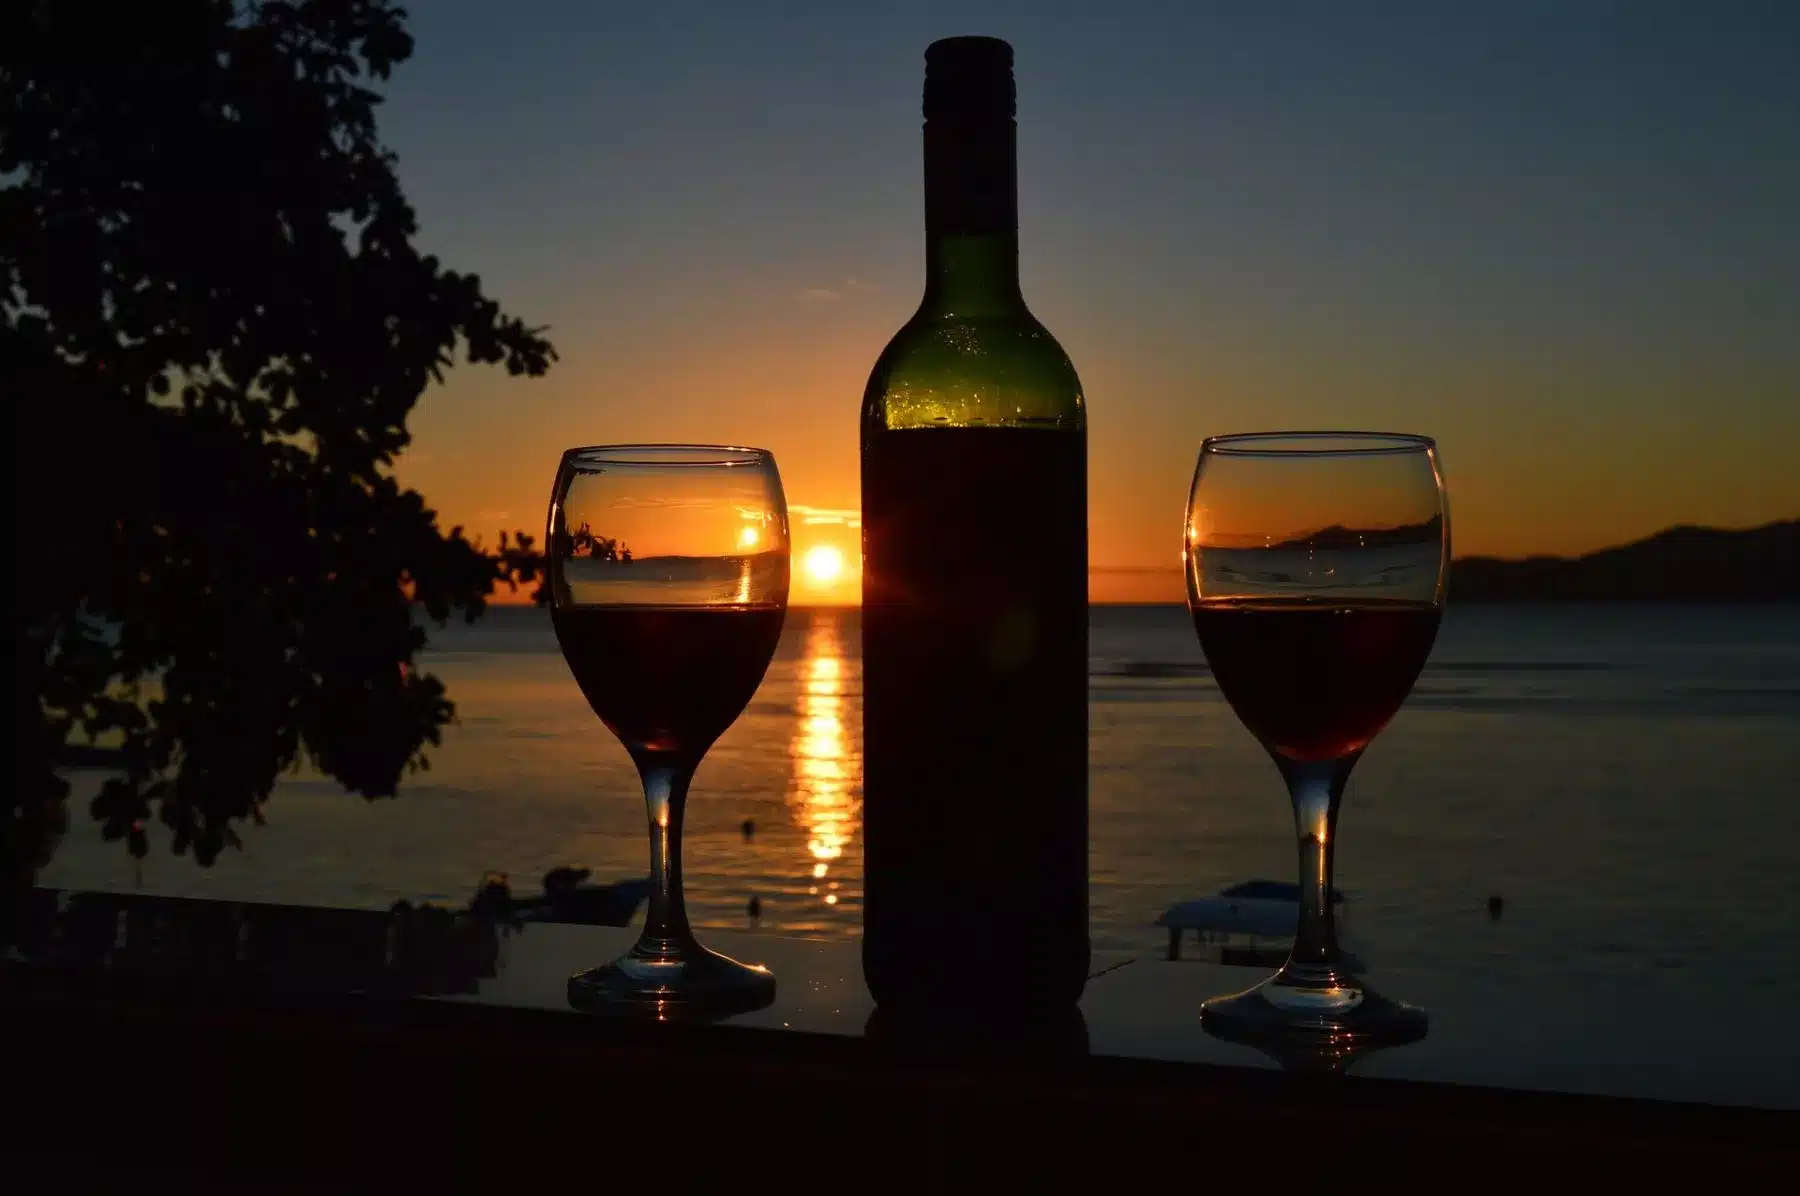 Zwei Gläser Wein und eine Flasche auf einem Geländer, die sich vor dem Hintergrund eines leuchtenden Sonnenuntergangs über einem ruhigen See abzeichnen, in der Ferne sind Segelboote zu sehen.